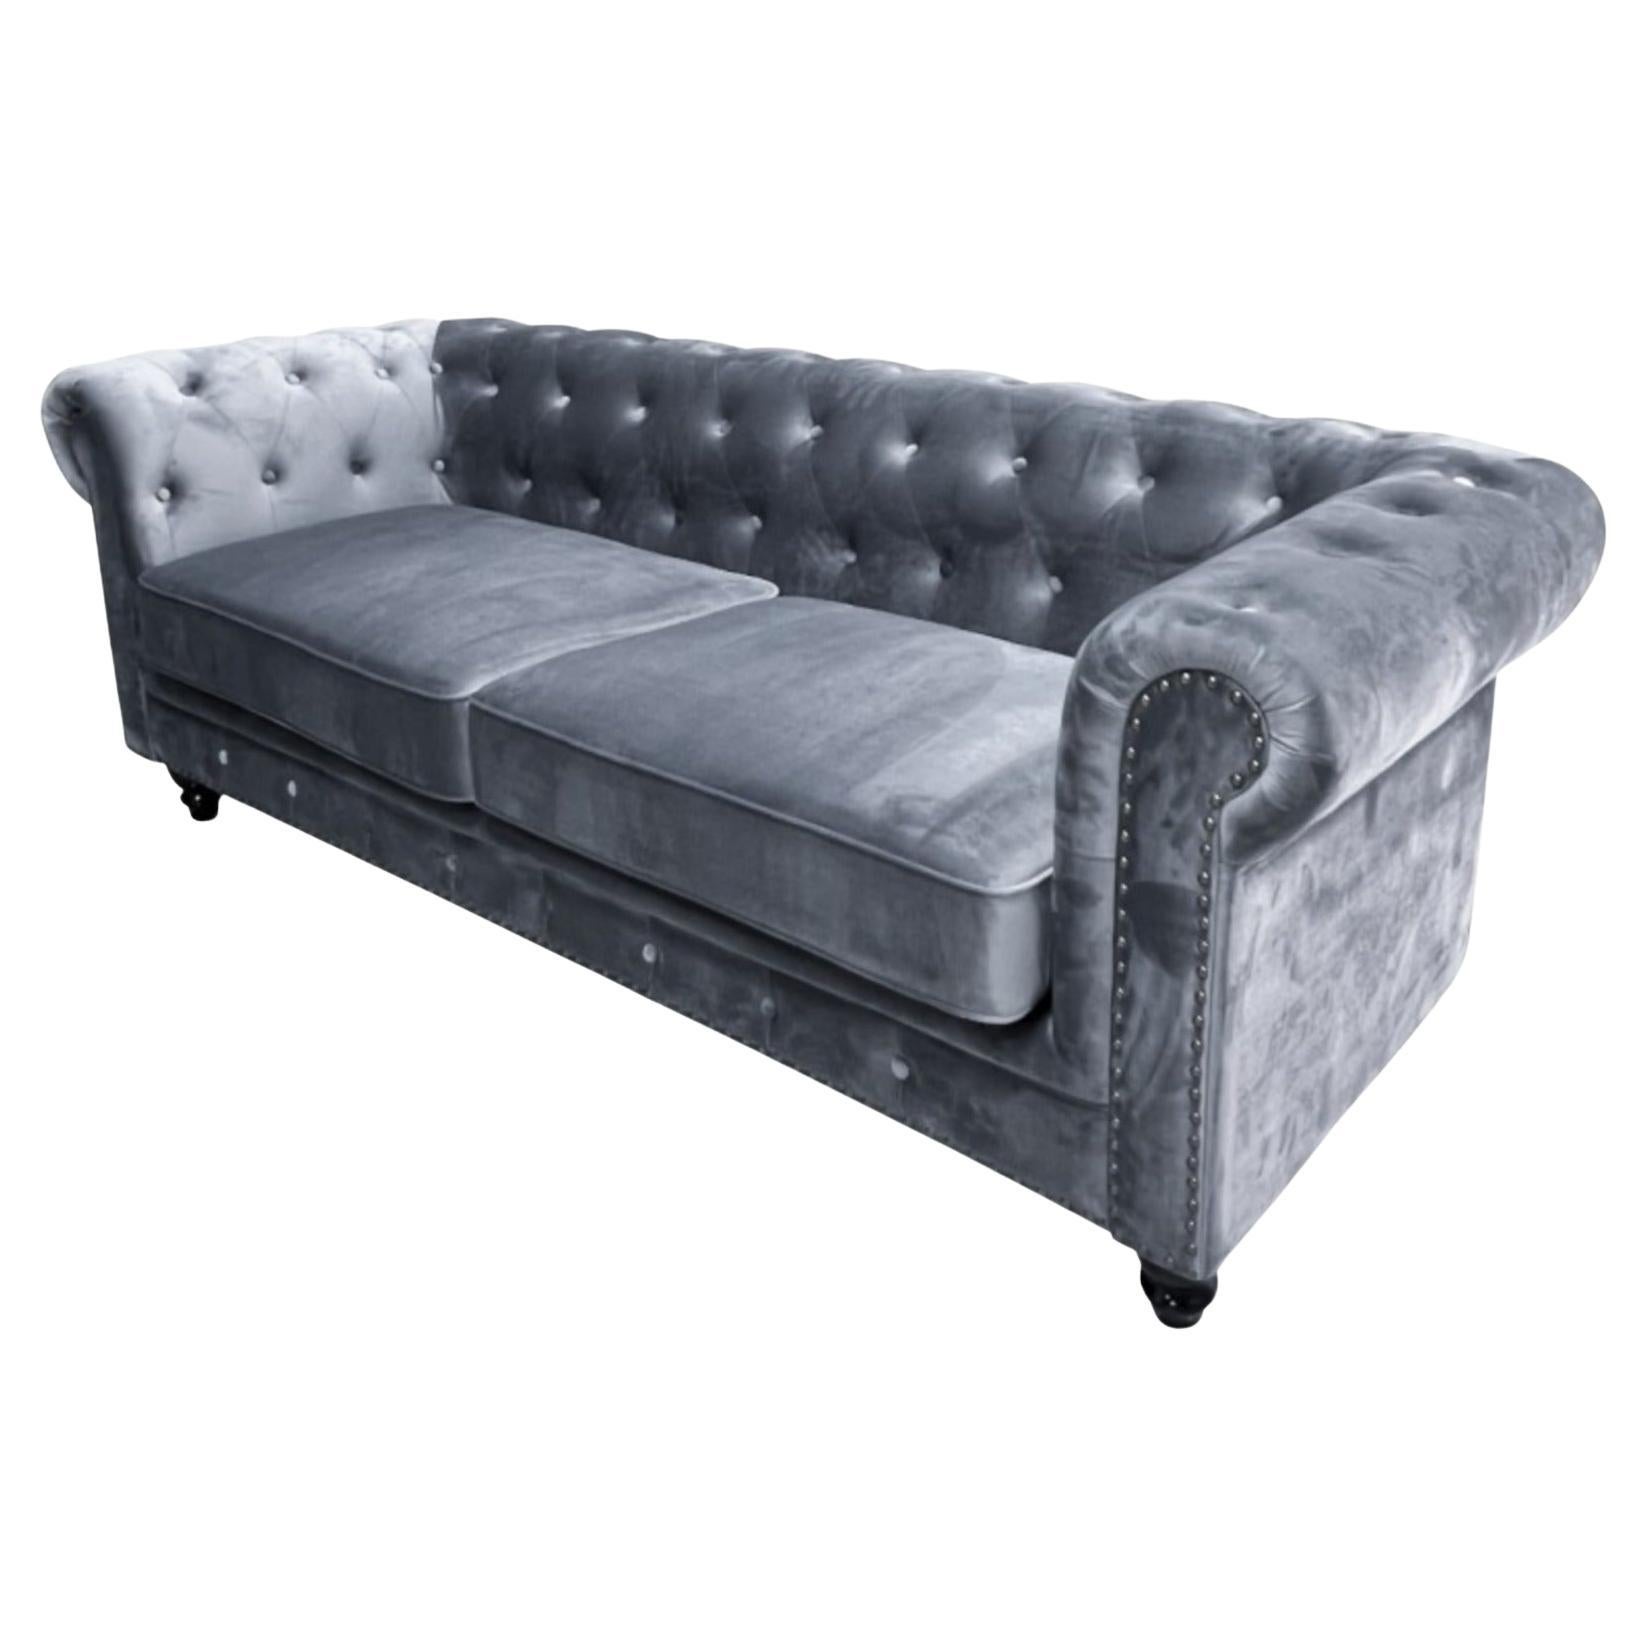 New Chester Premium 3 Seater Sofa, Gray Velvet Upholstery